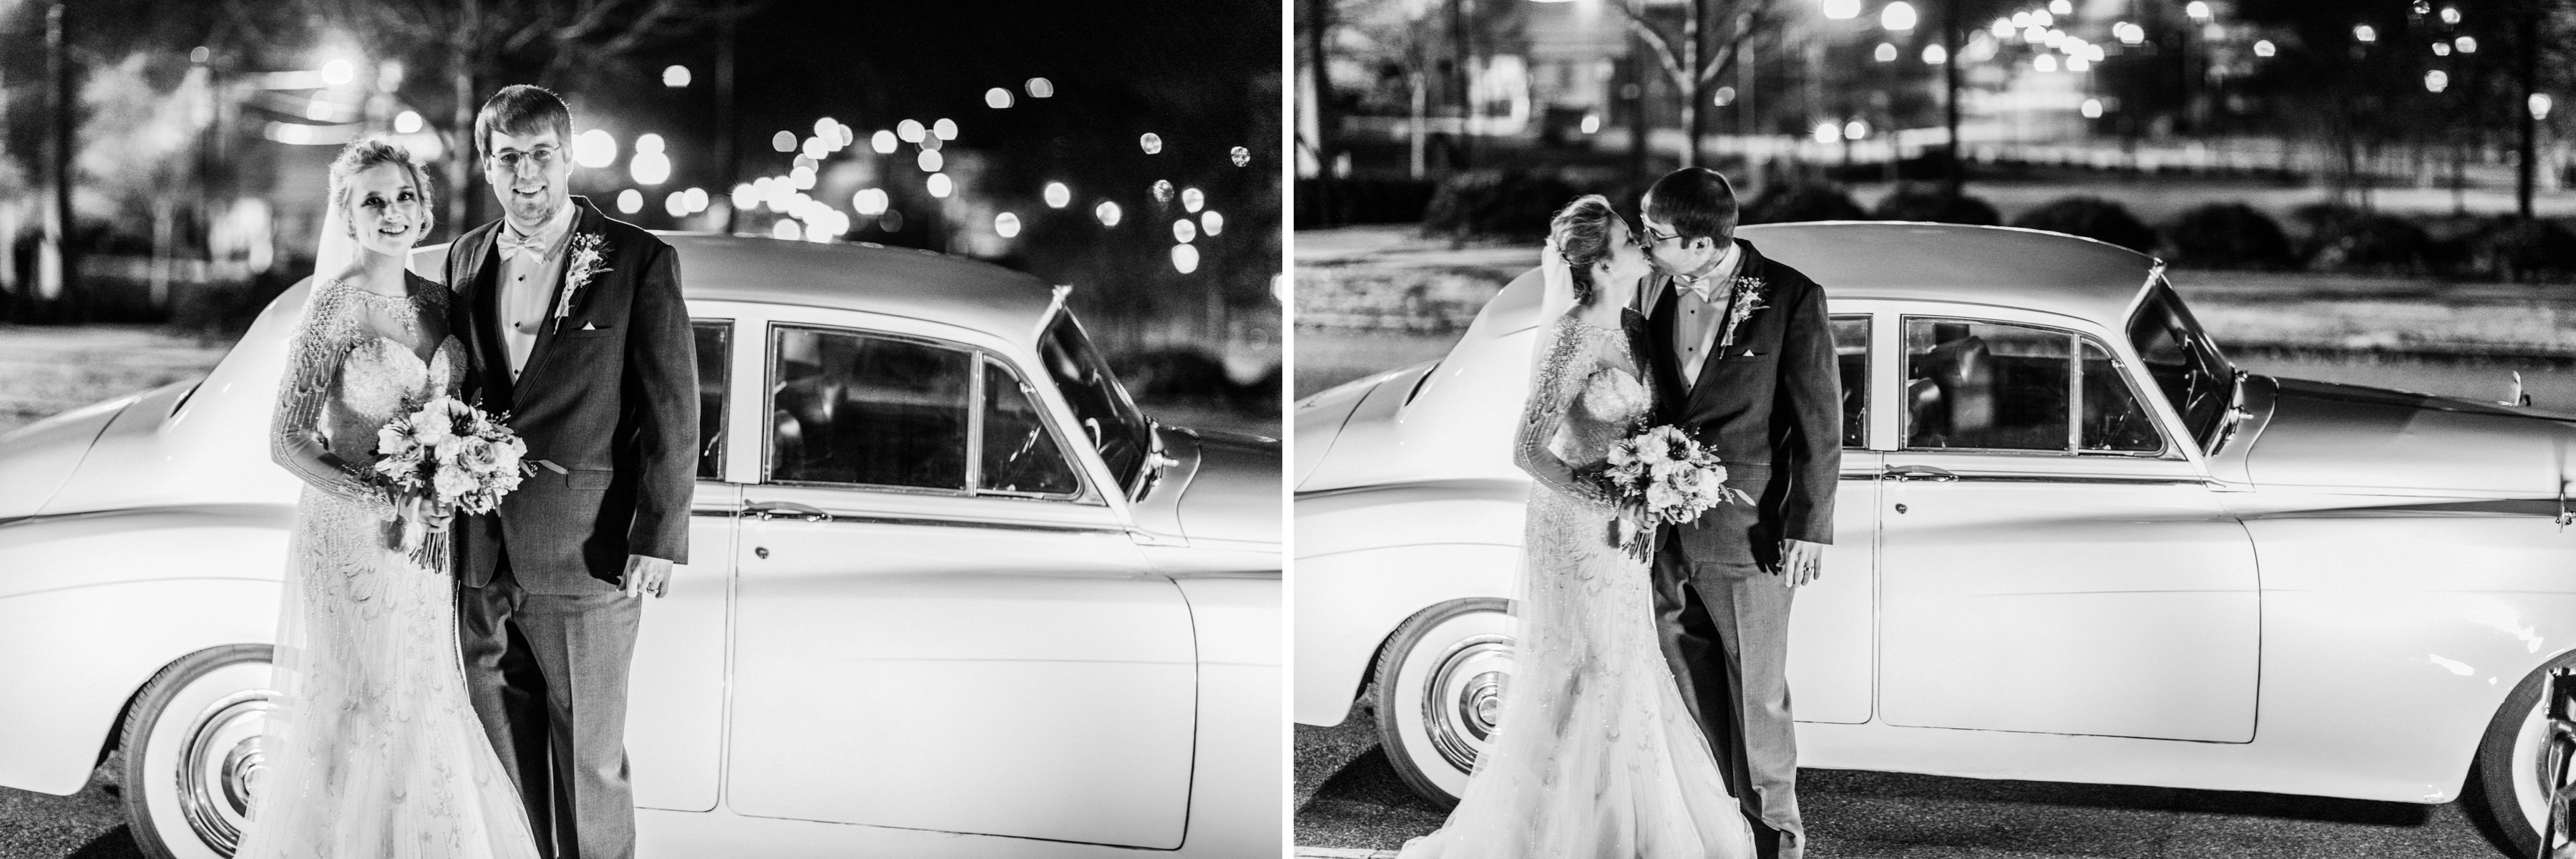 OAKLEY_WEDDING_MONTGOMERY_ALABAMA_WEDDING_PHOTOGRAPHY_58